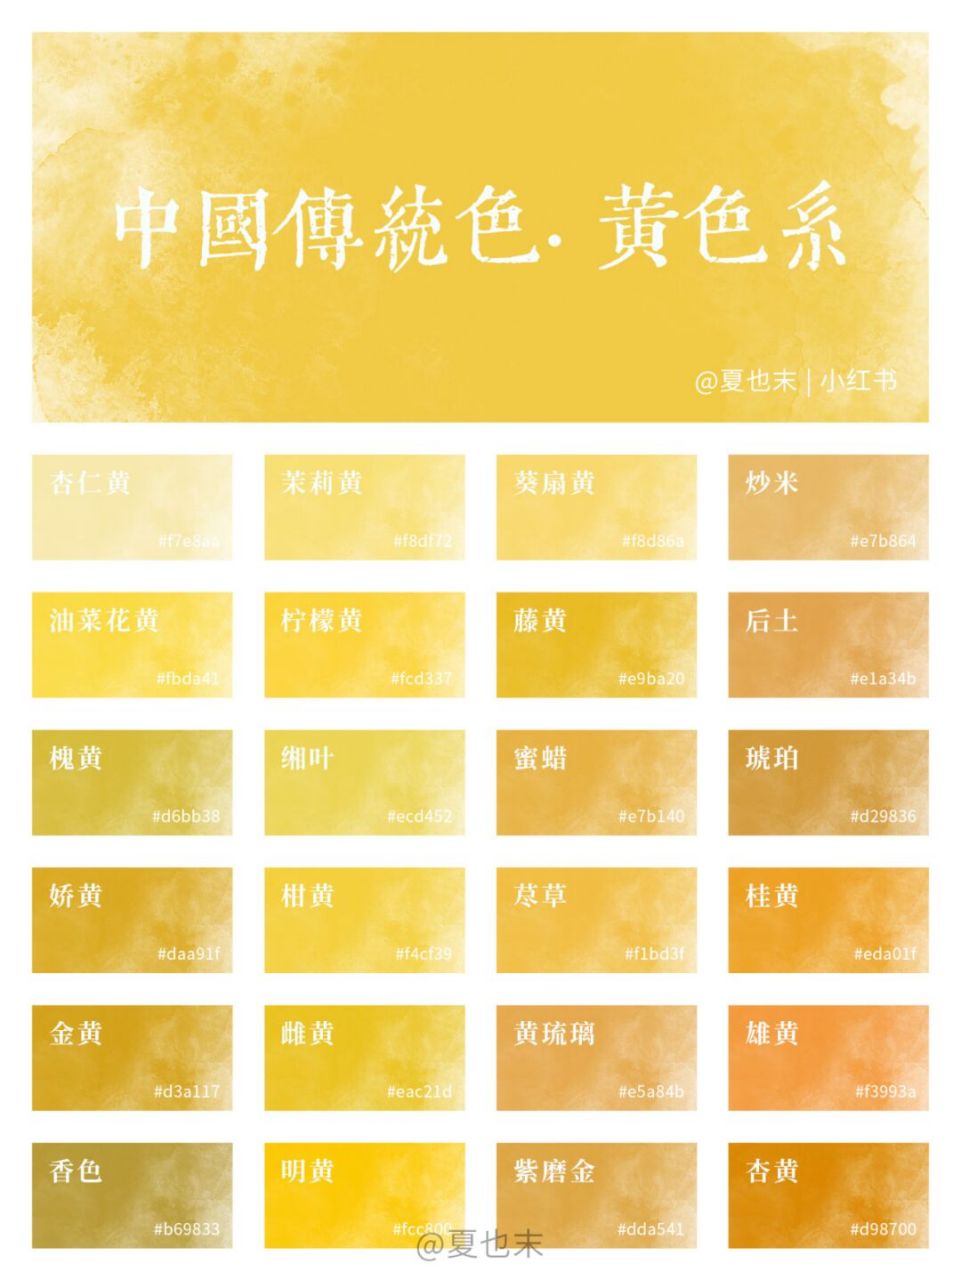 第2期黄色系来啦!中国传统色yyds! 这次有你钟意的颜色吗 ?